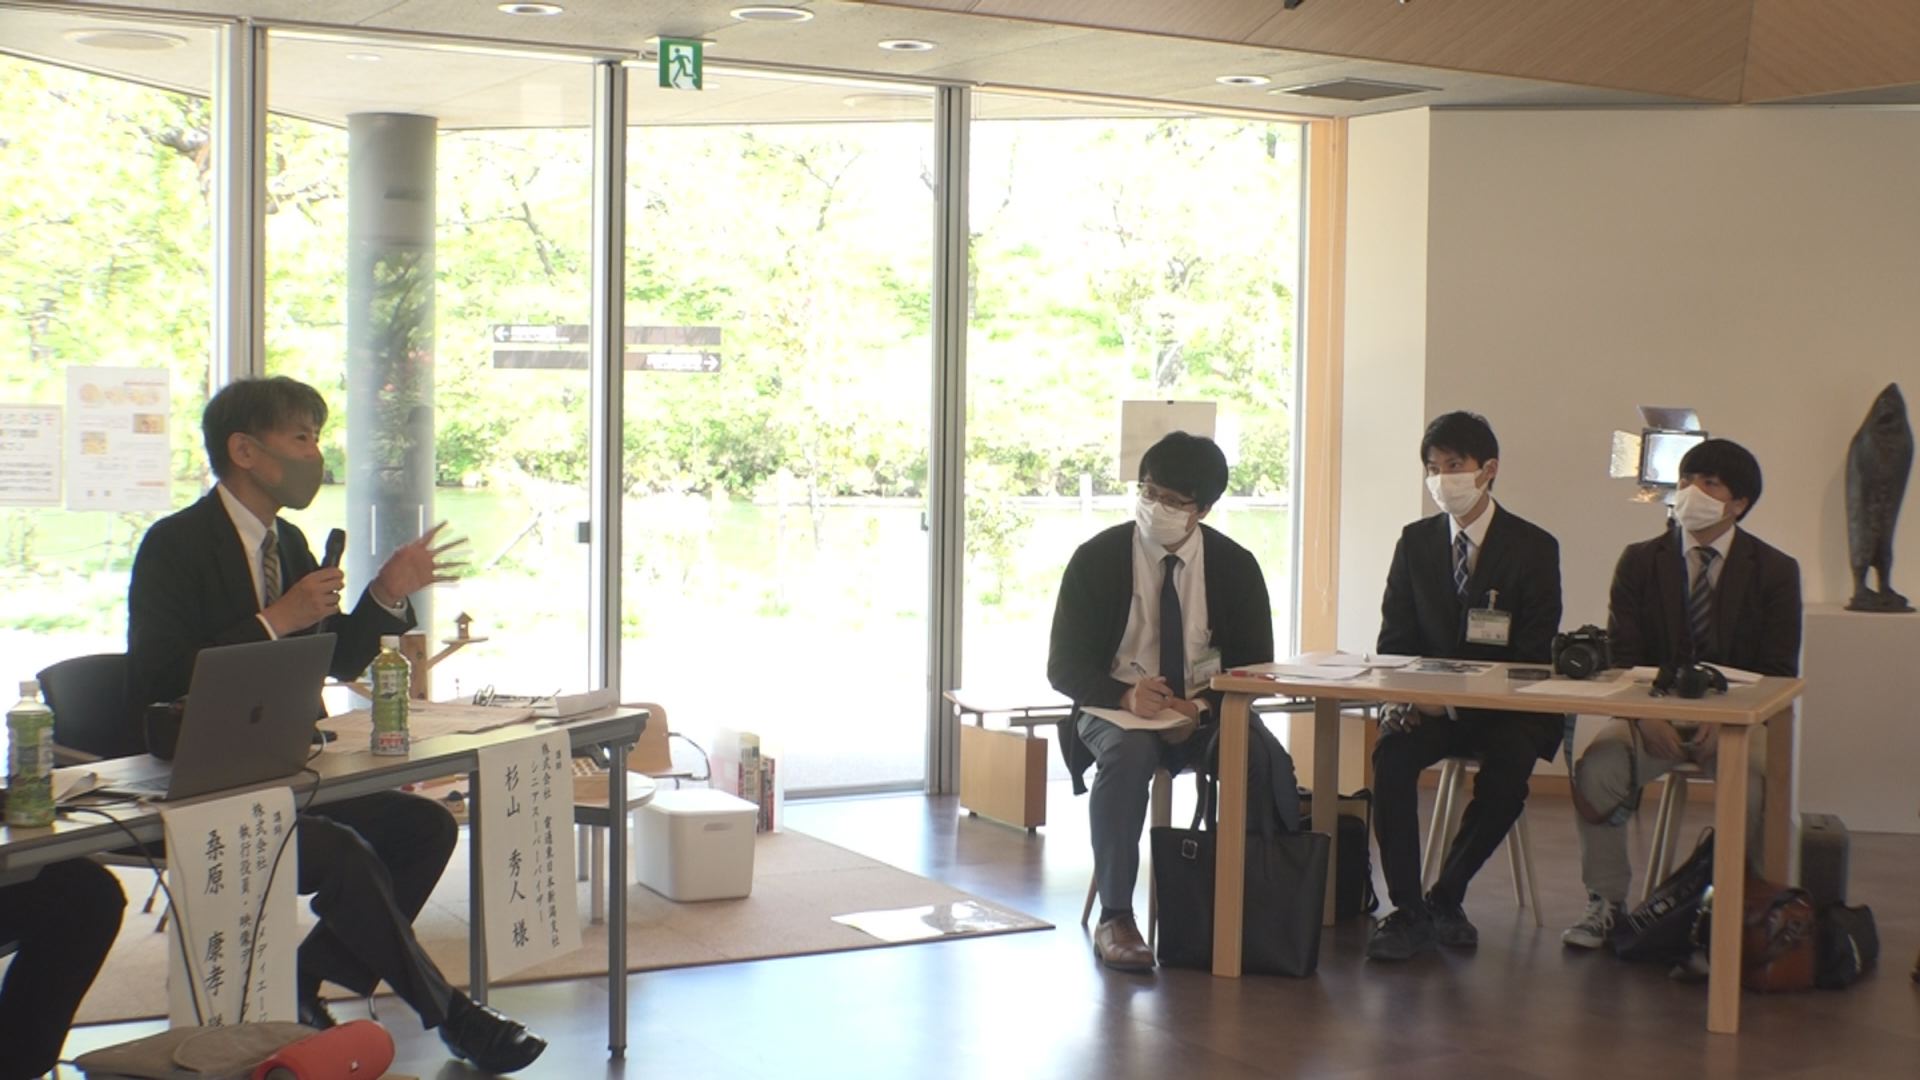 高田地区のPR動画制作へ プロジェクトメンバーが撮影ノウハウ学ぶ | ニュース - joetsu.ne.jp